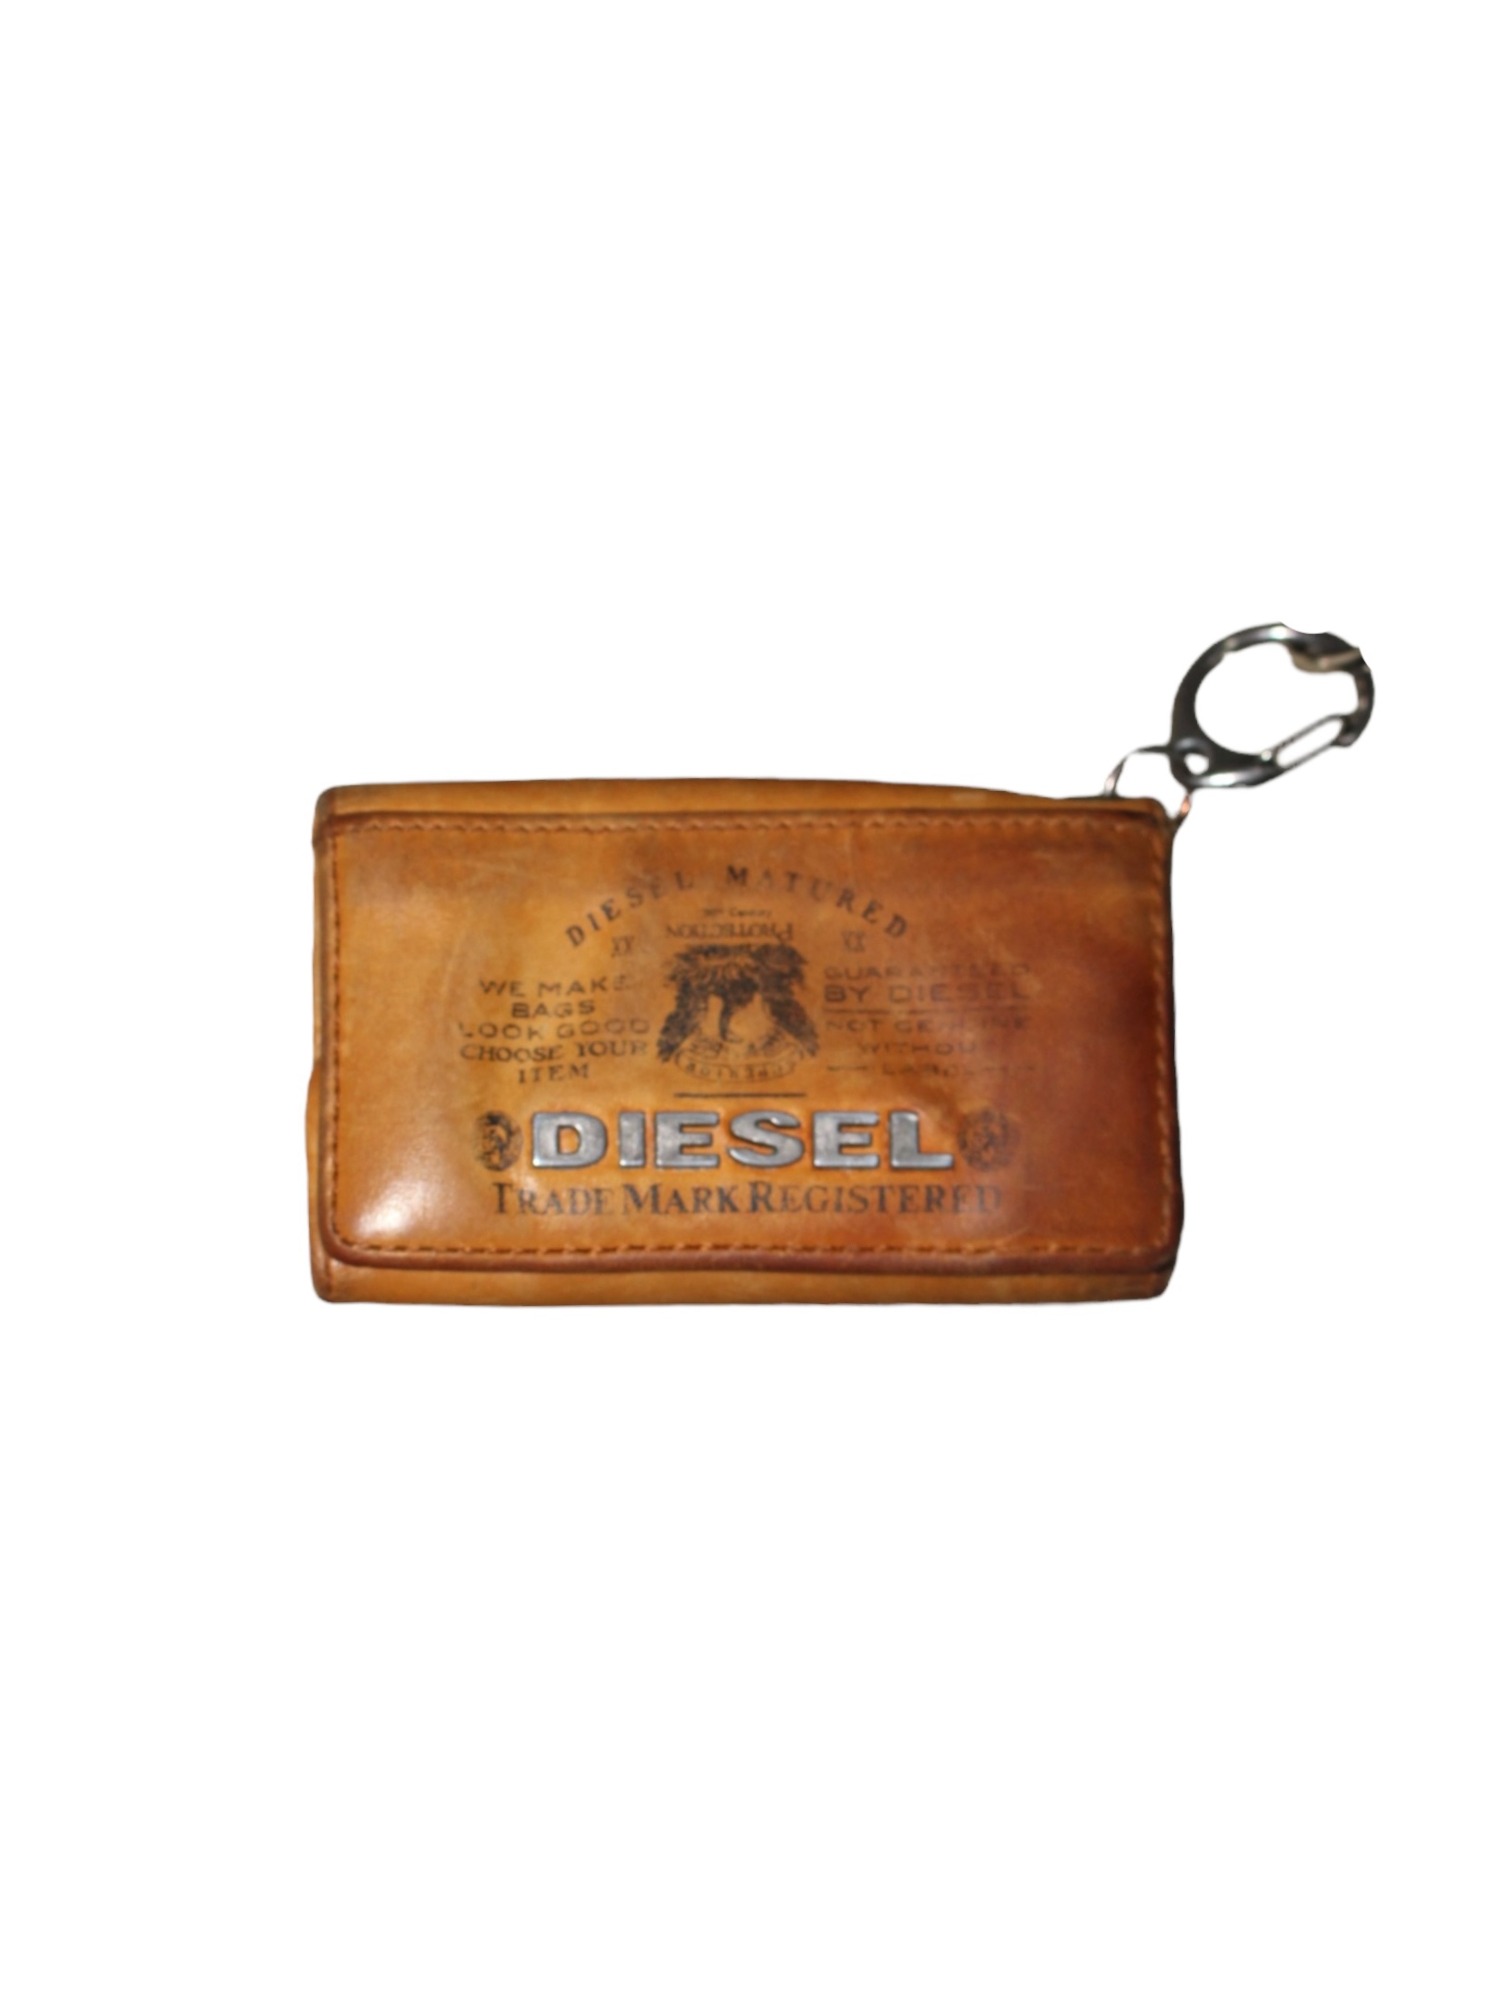 DIESEL Key Case Wallet (Carmel)